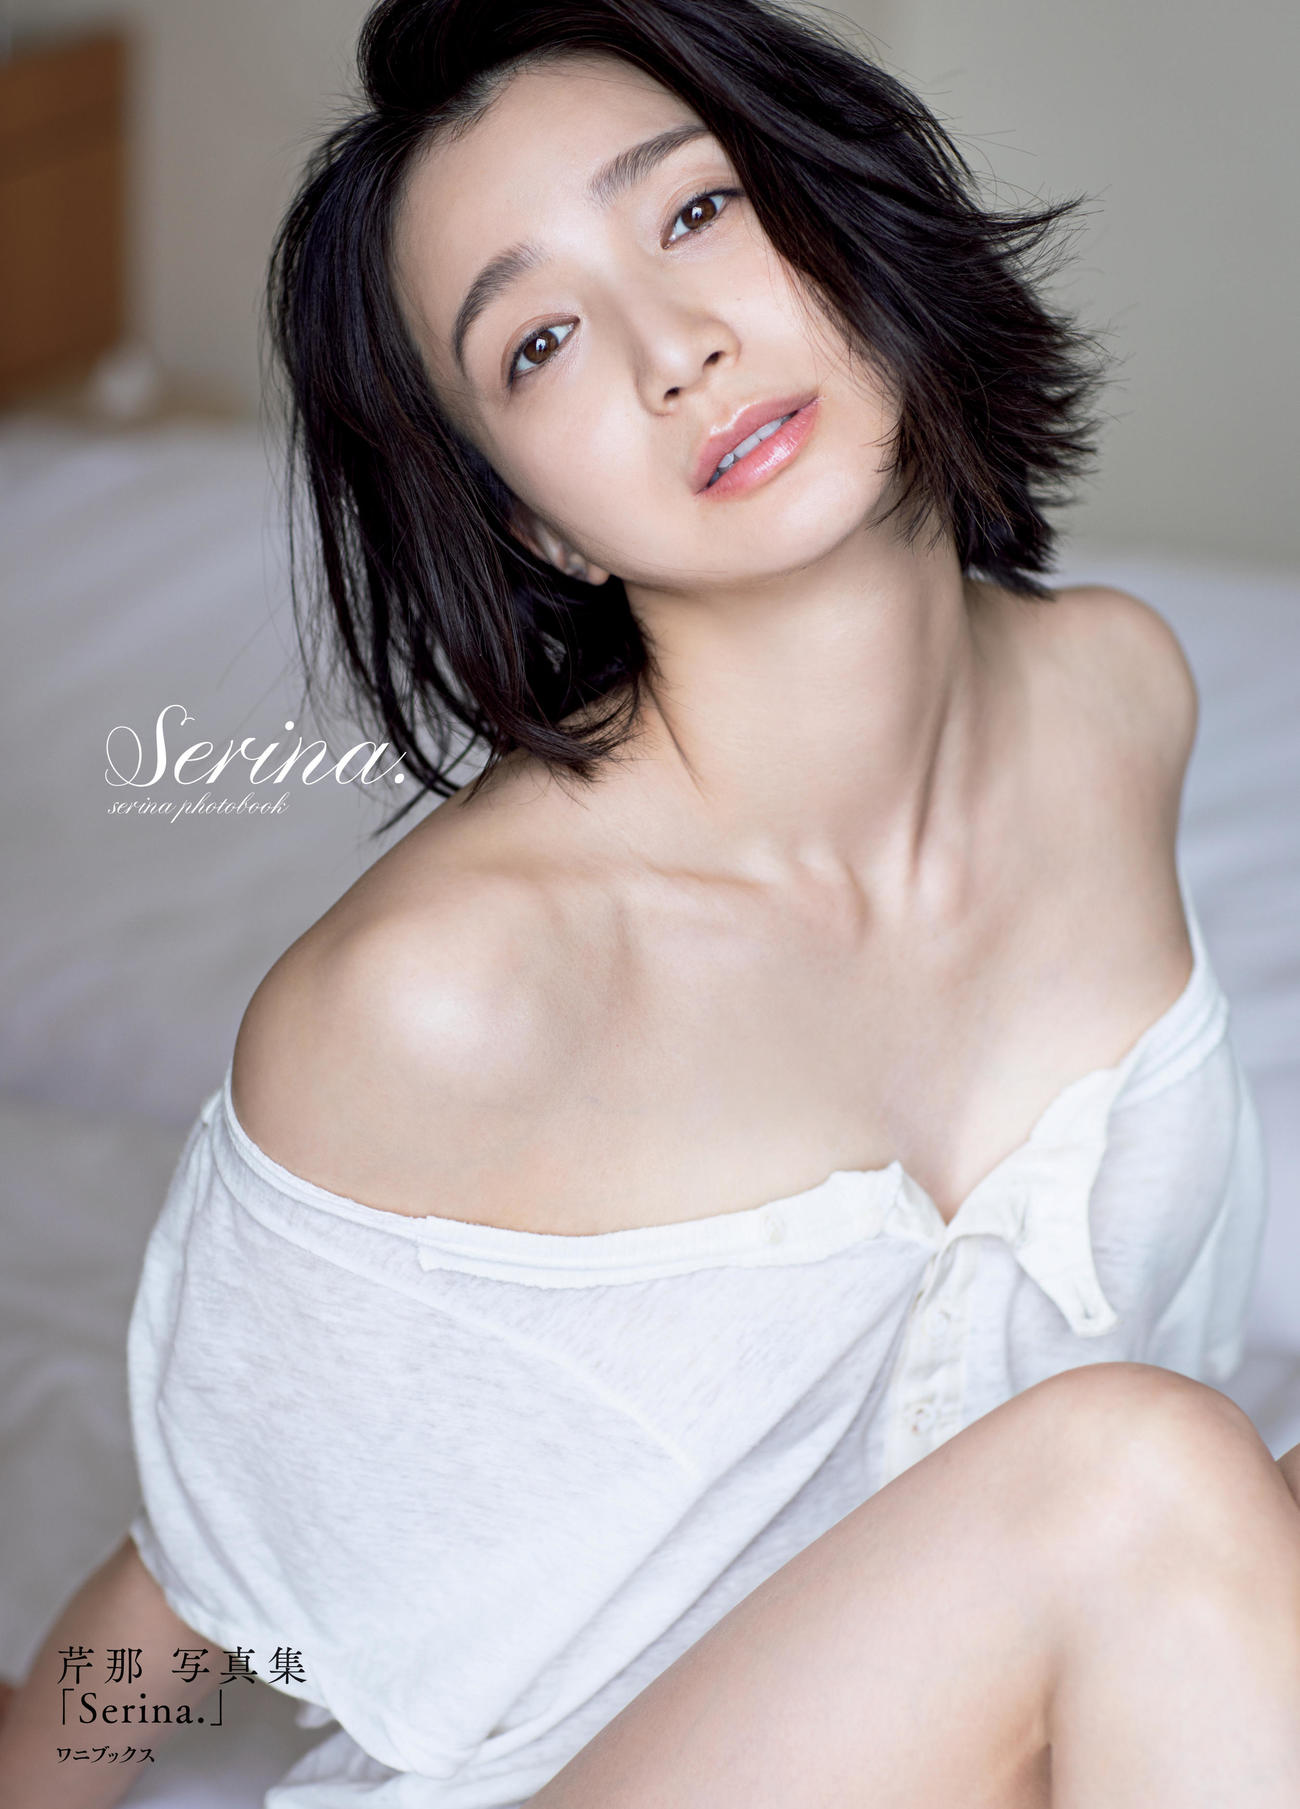 芹那10年ぶりの写真集「Serina．」の表紙